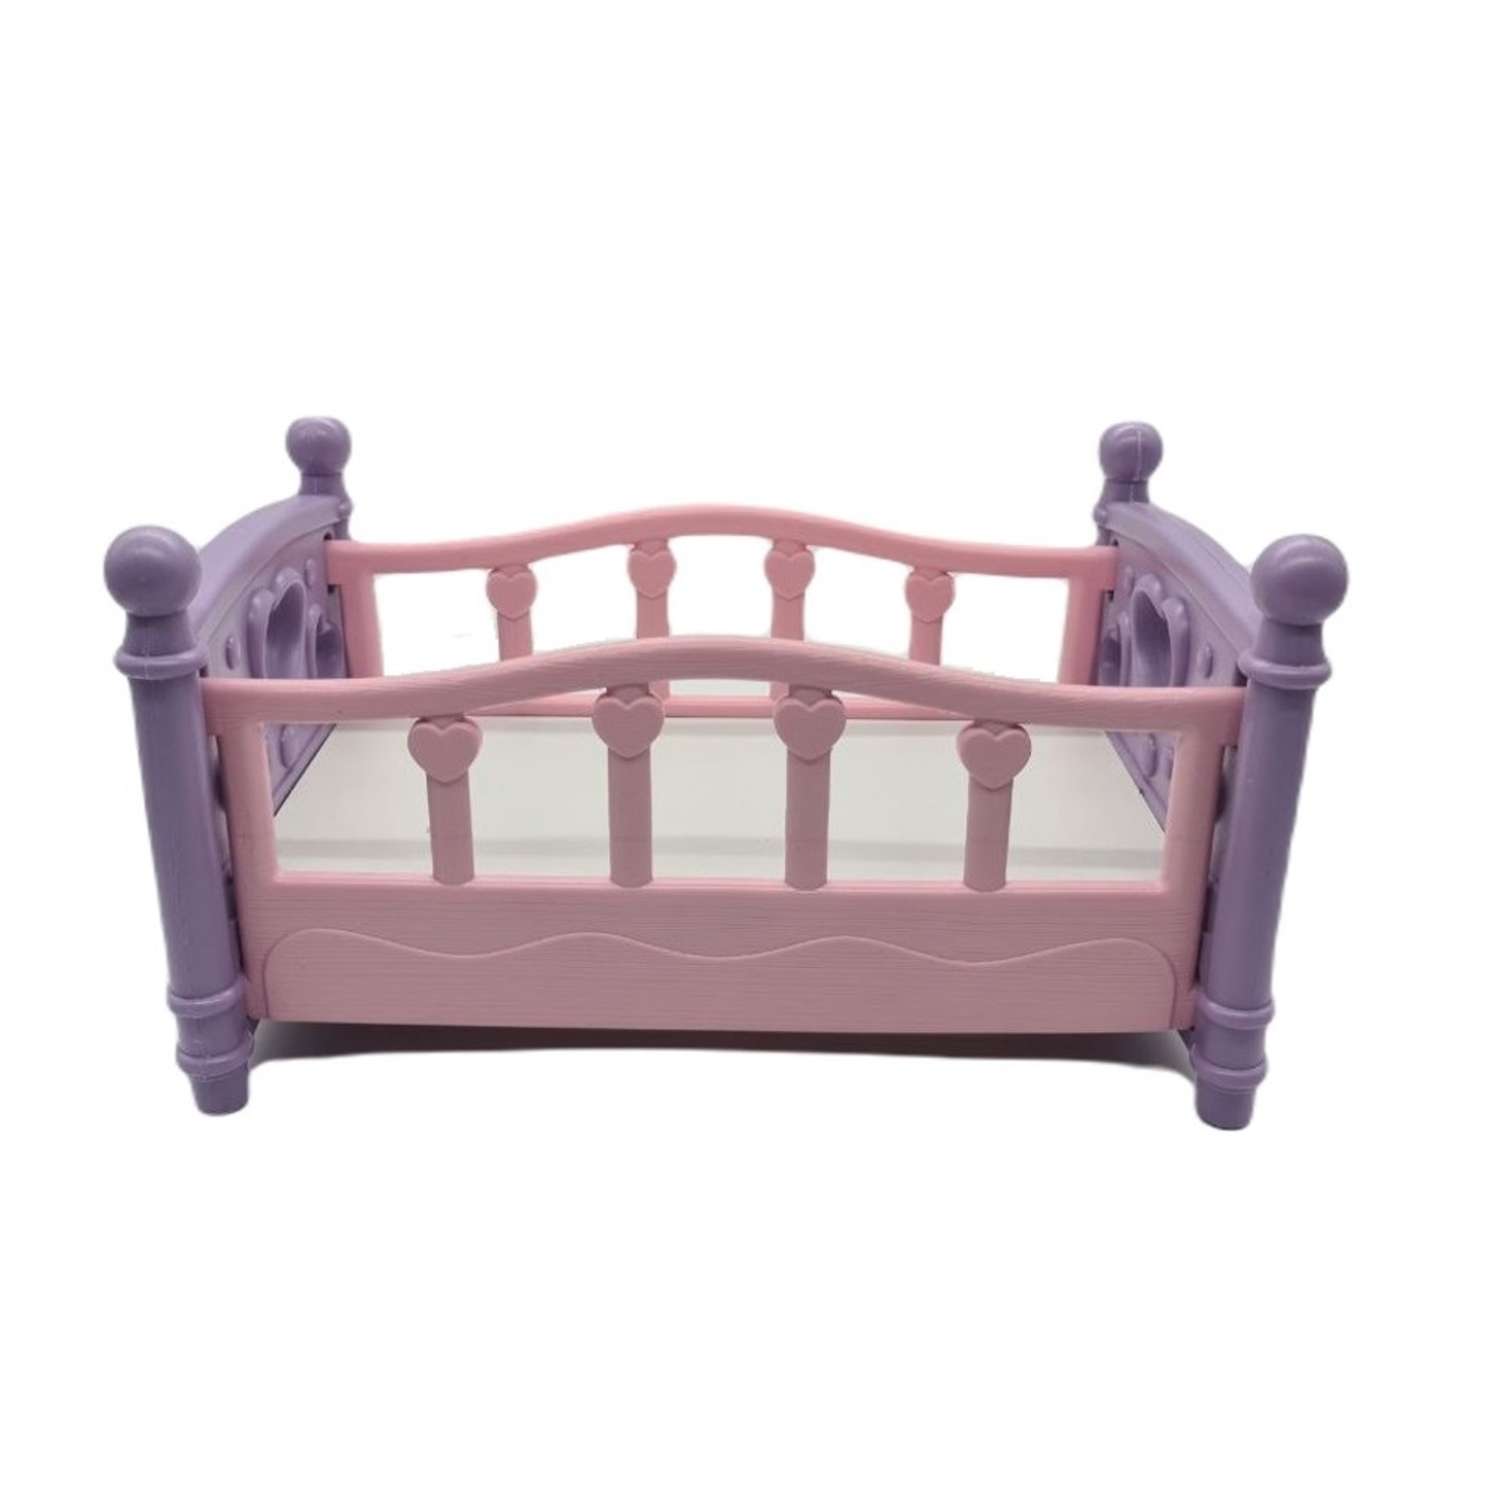 Кроватка для куклы TOY MIX цвет розовый РР 2015-058 РР 2015-058 - фото 4